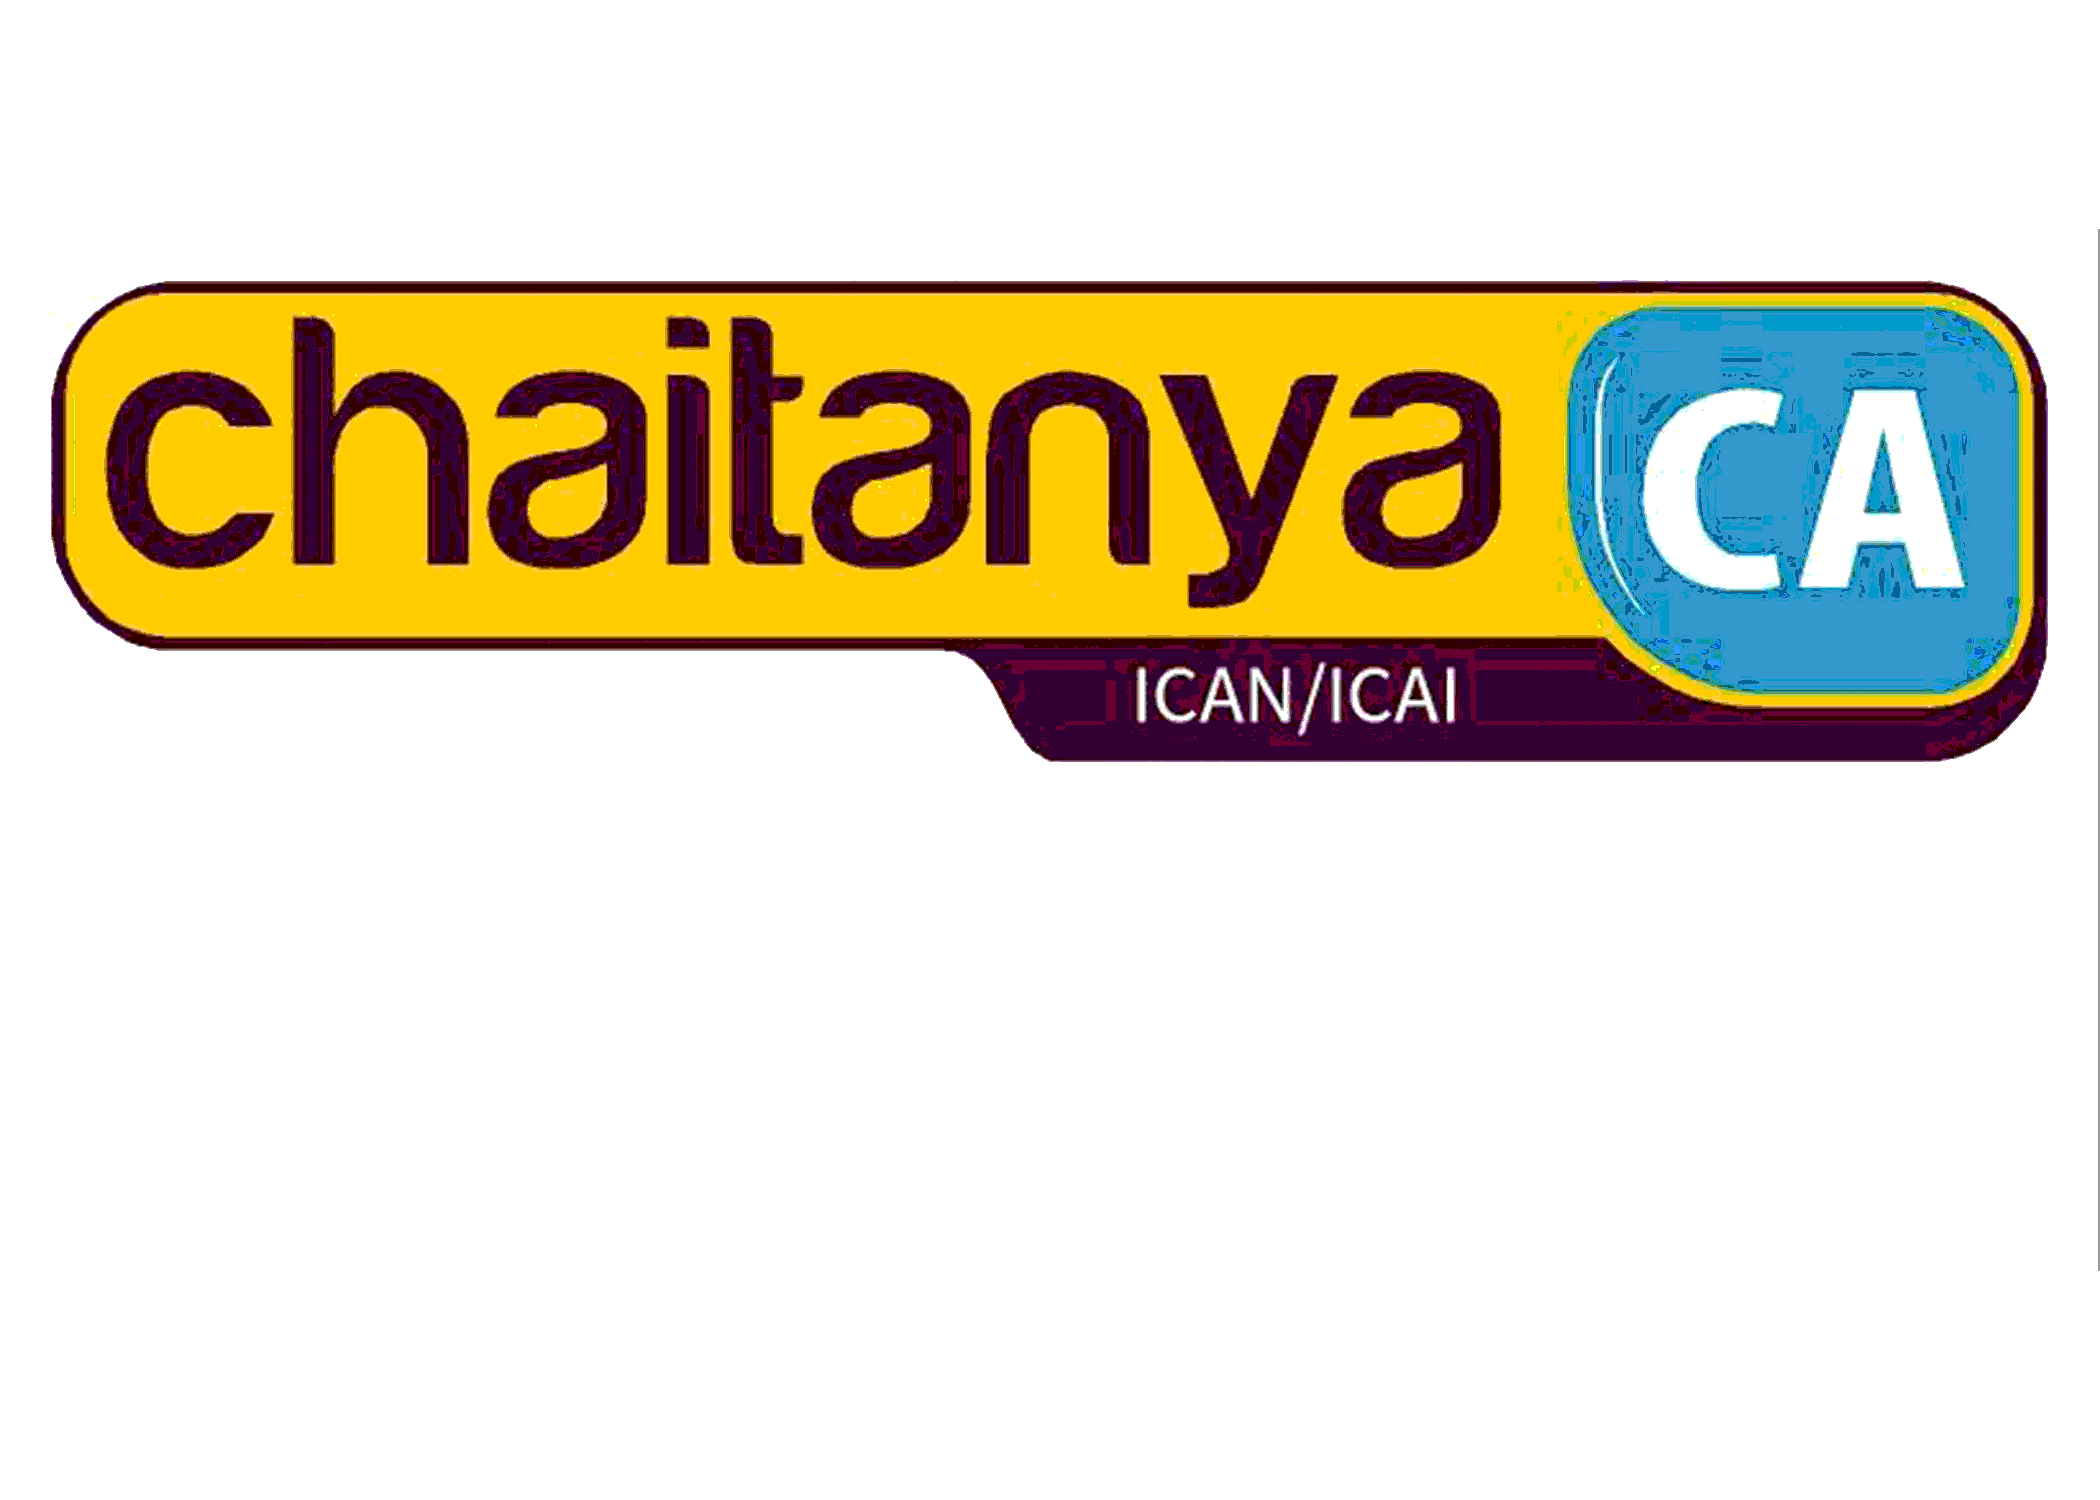 chaitanyaca